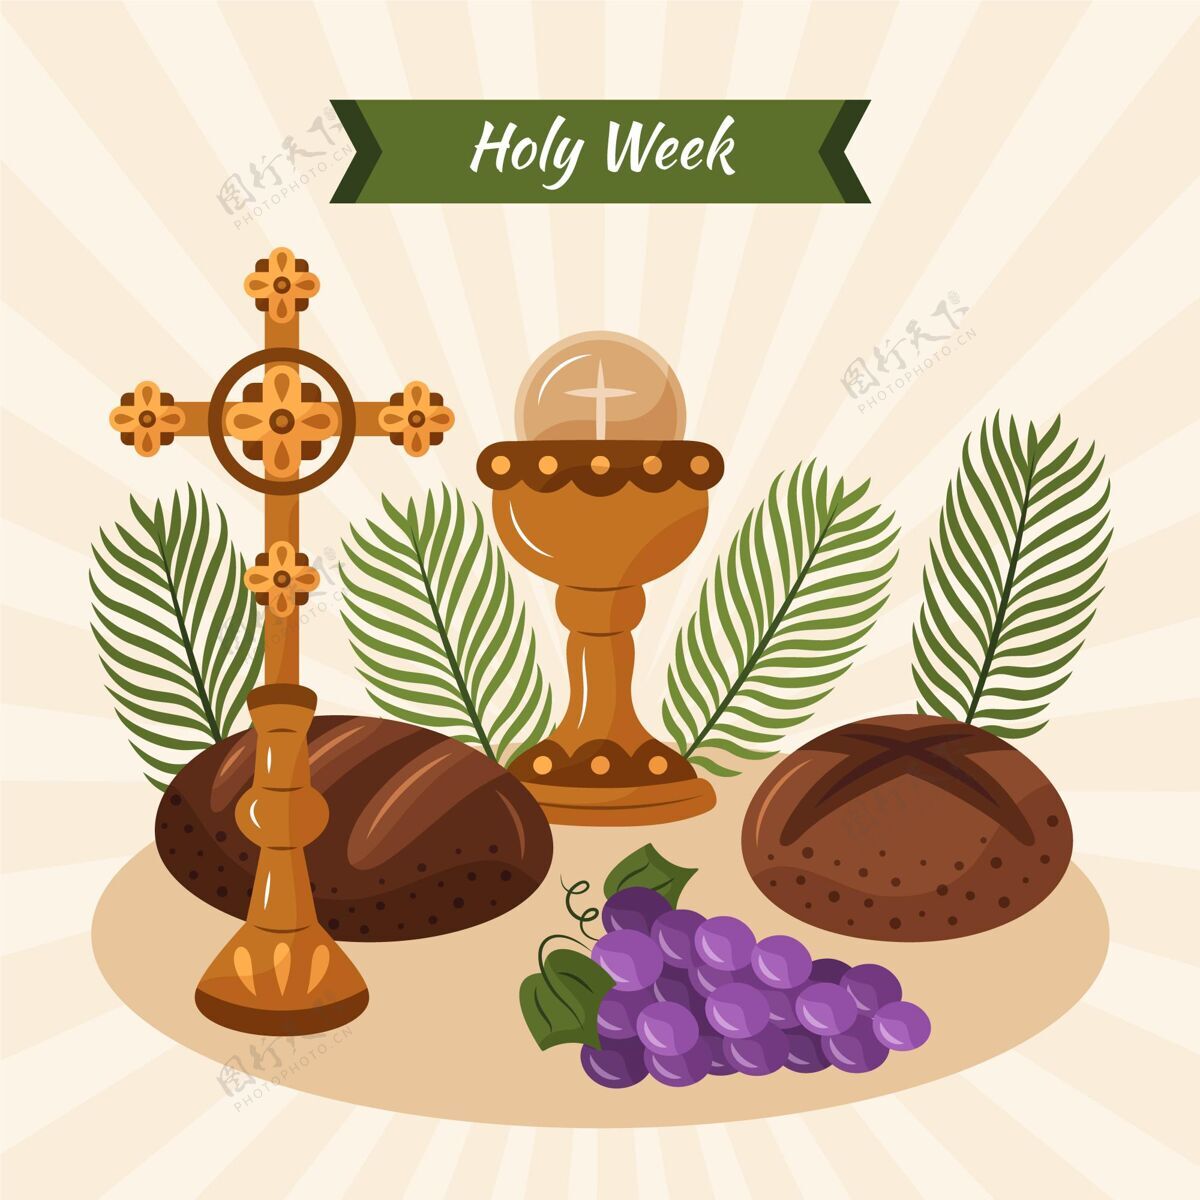 插图手绘圣周插图与葡萄酒和面包假日基督教帕斯卡